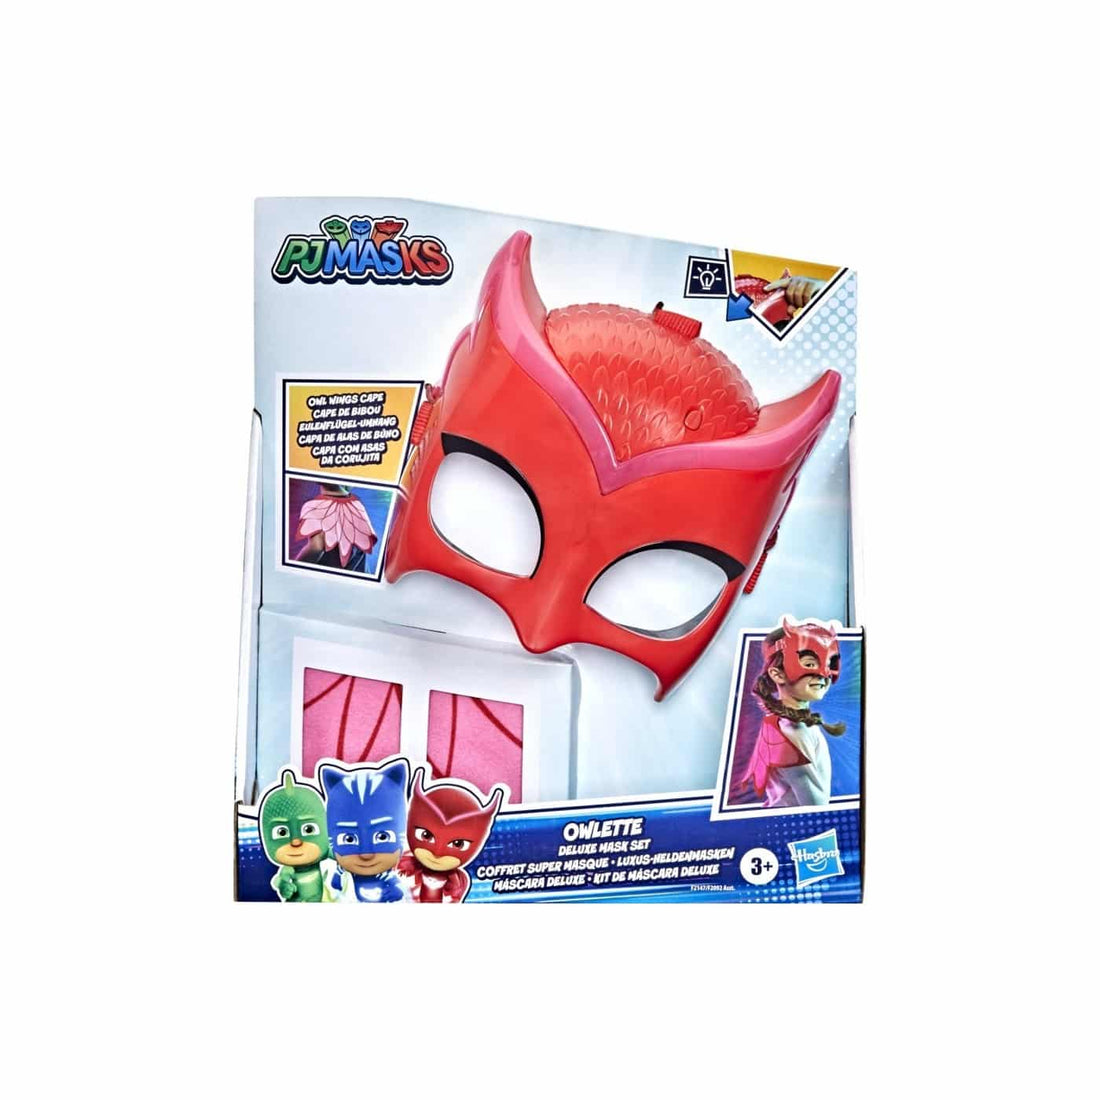 Hasbro Pj Masks Deluxe Mask Set- Owlette